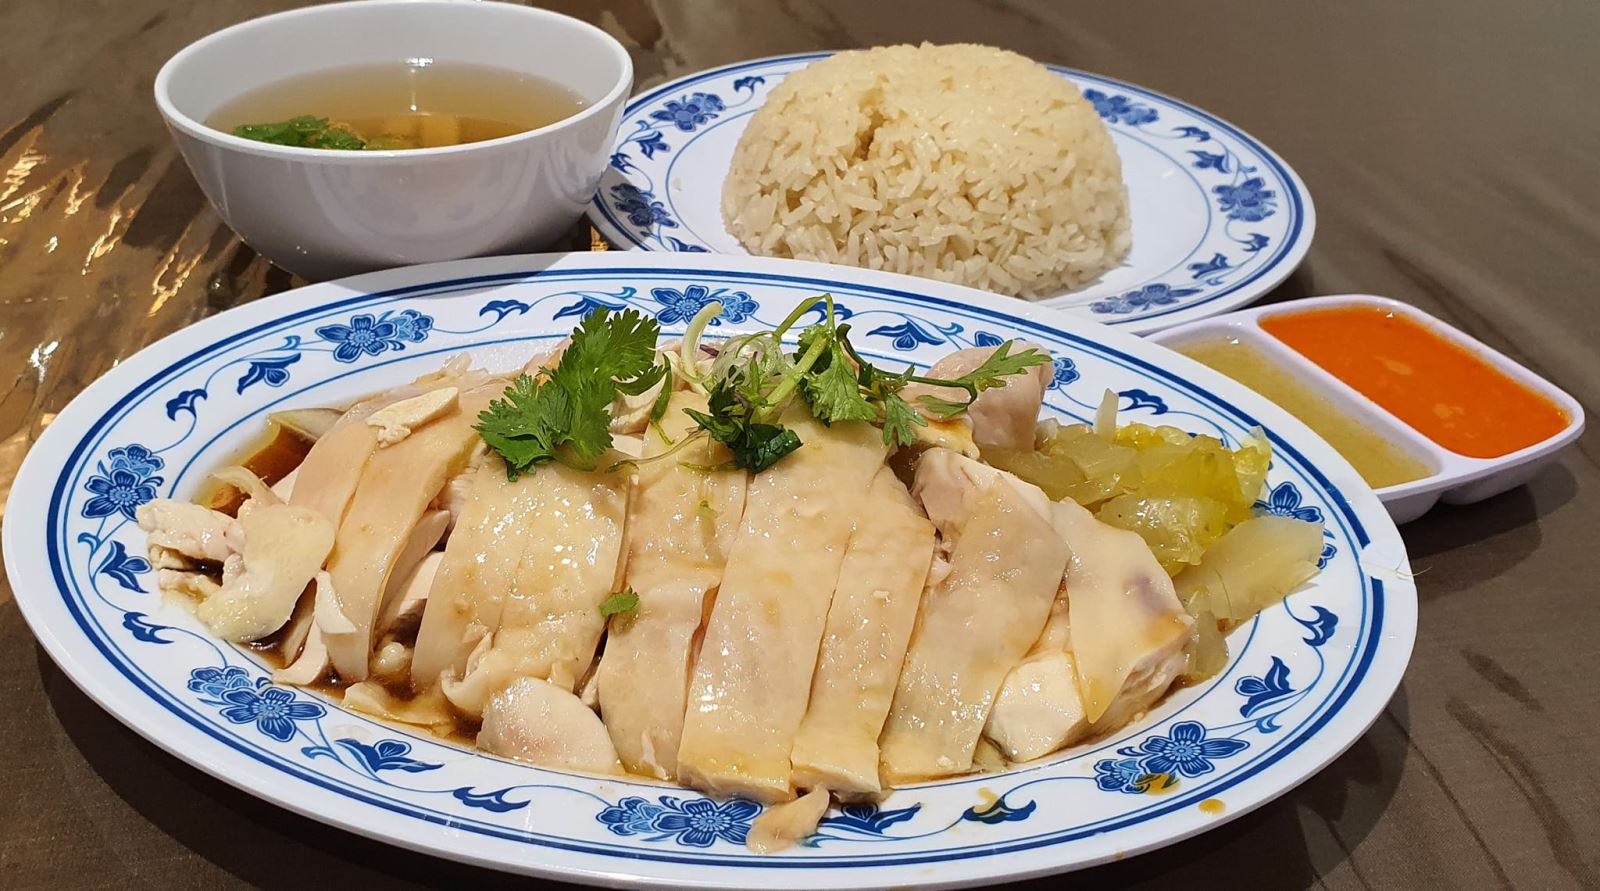 Cơm gà Hải Nam là món ăn nổi tiếng nhất tại Singapore